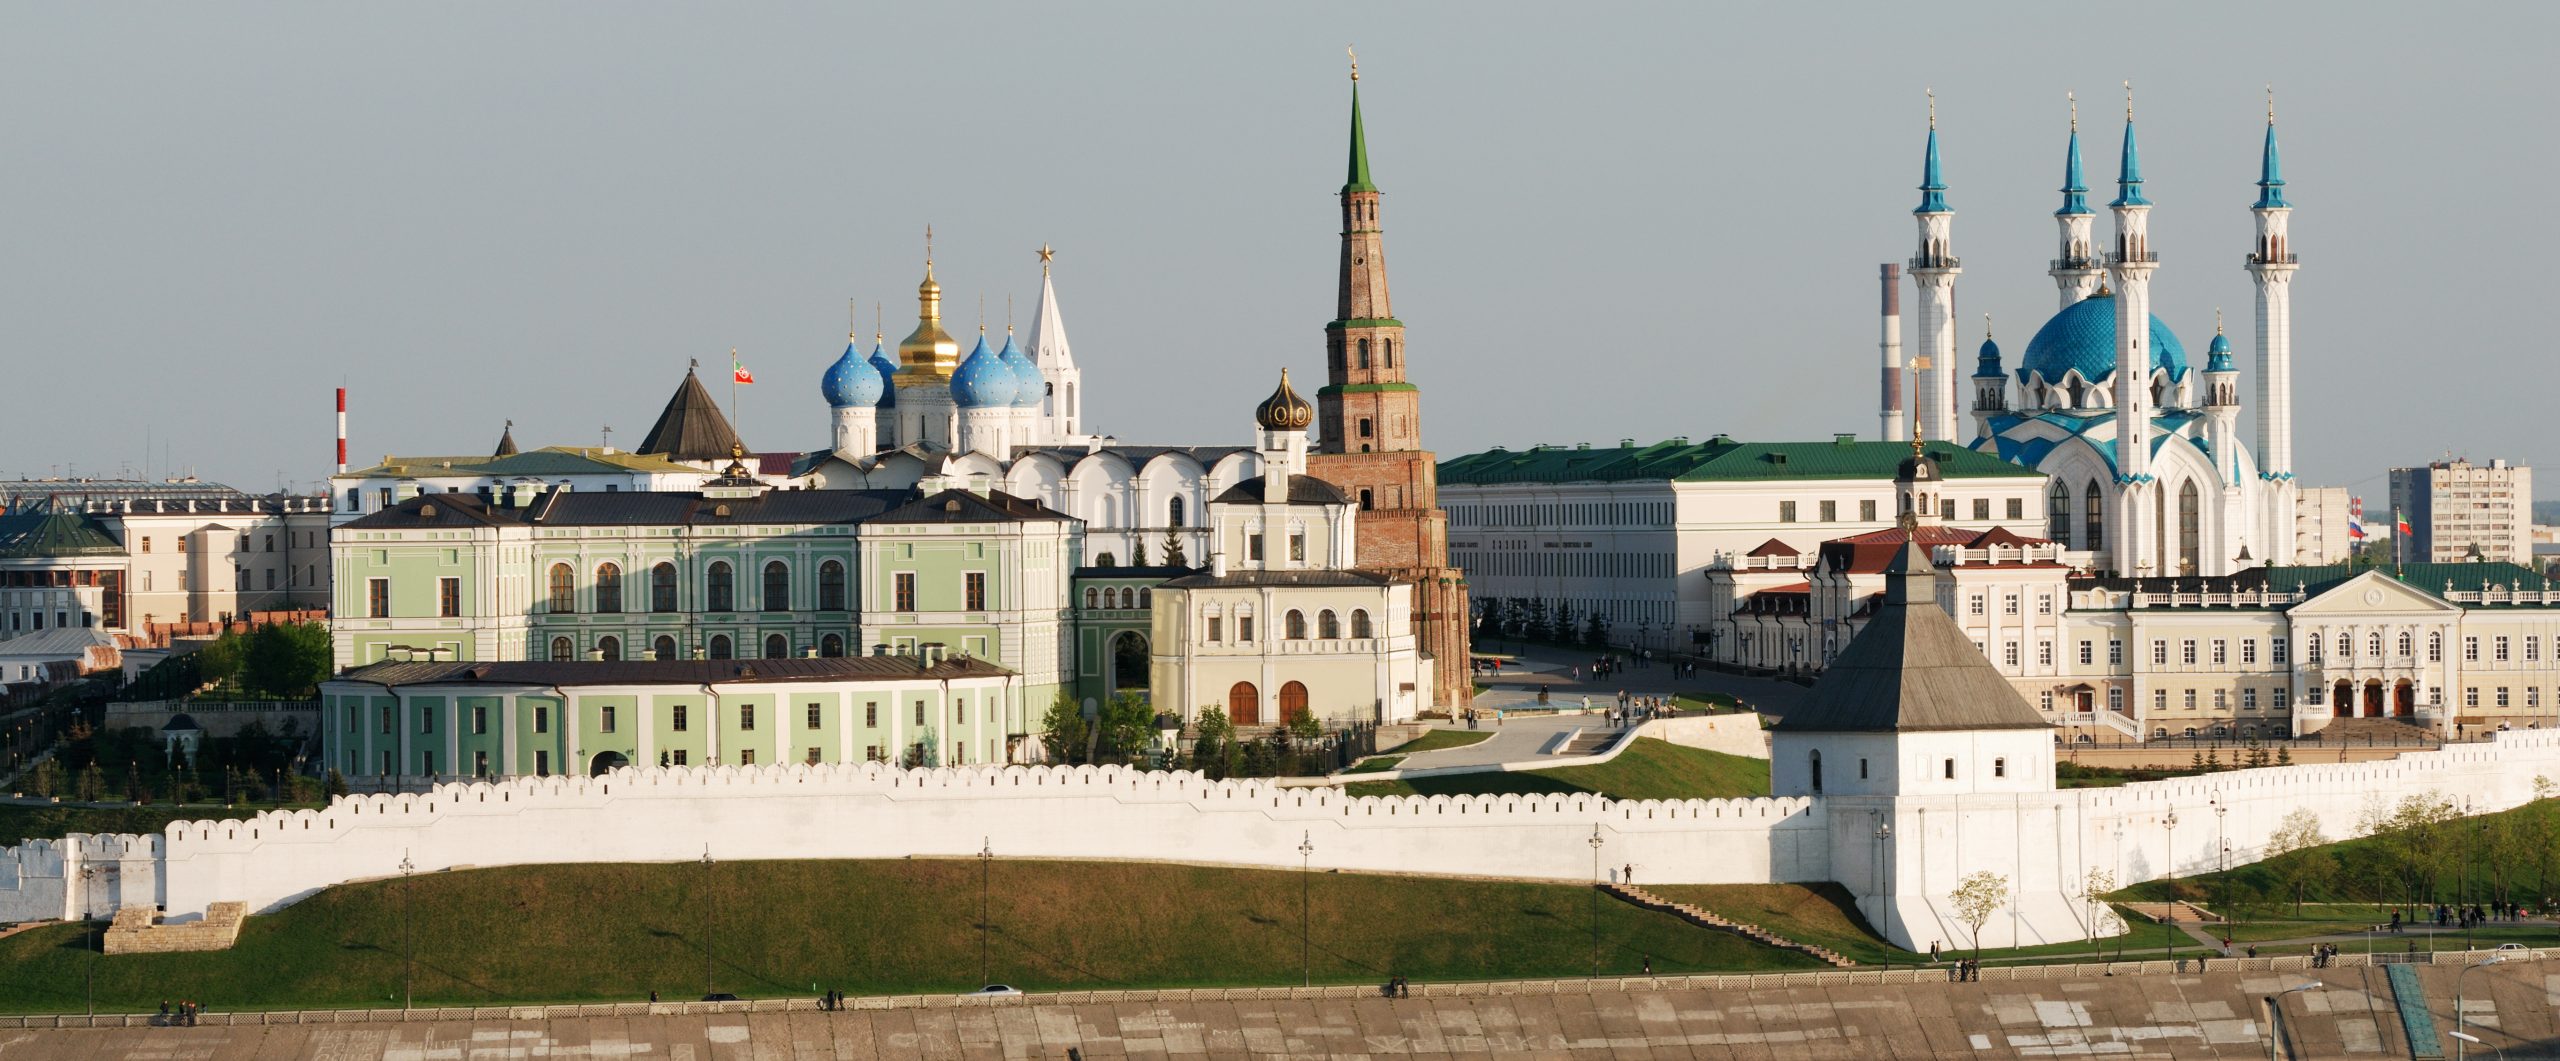 Казанский кремль фото в хорошем качестве